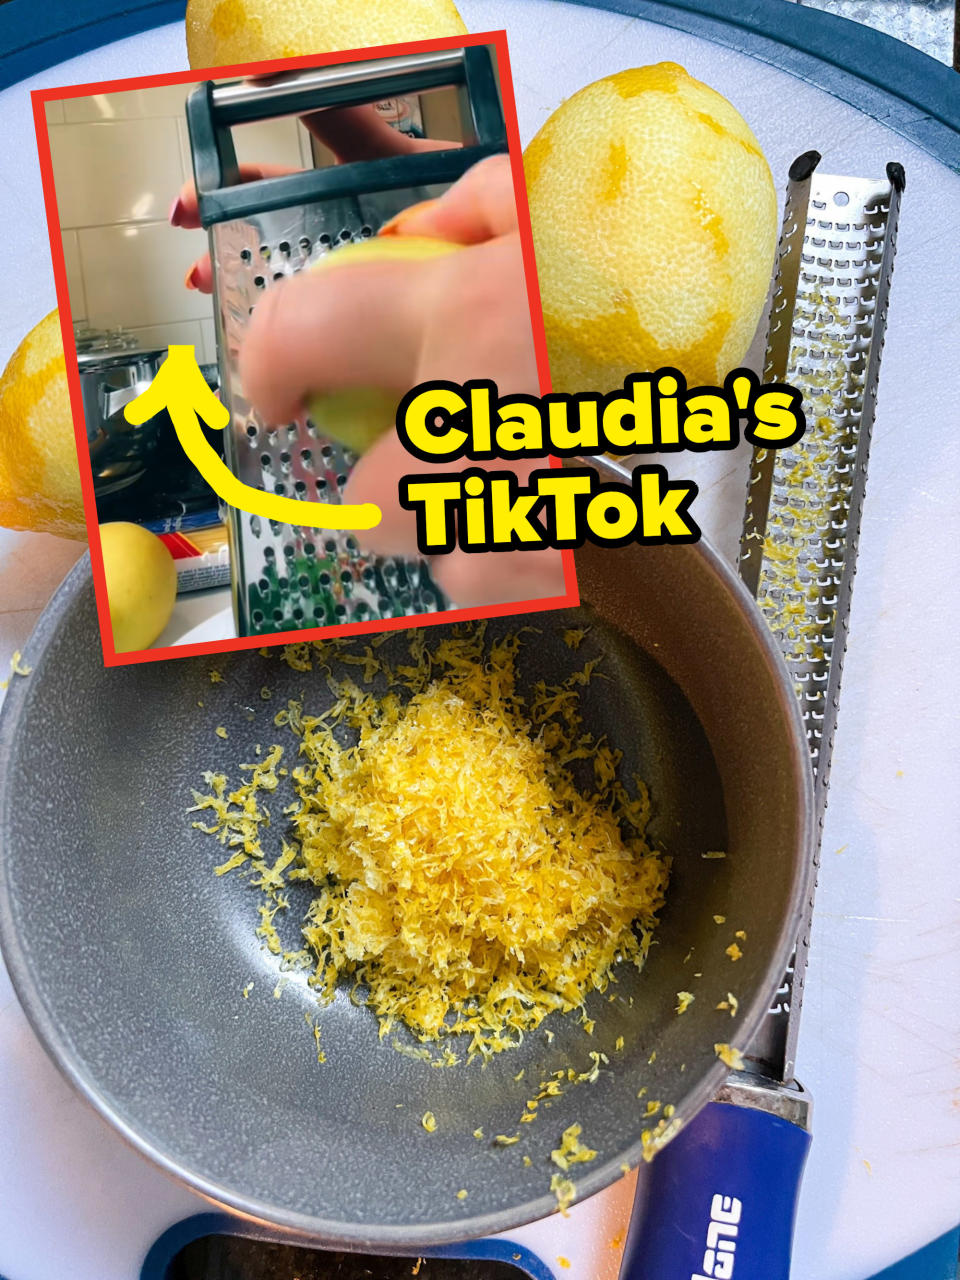 Claudia grating lemon in her TikTok